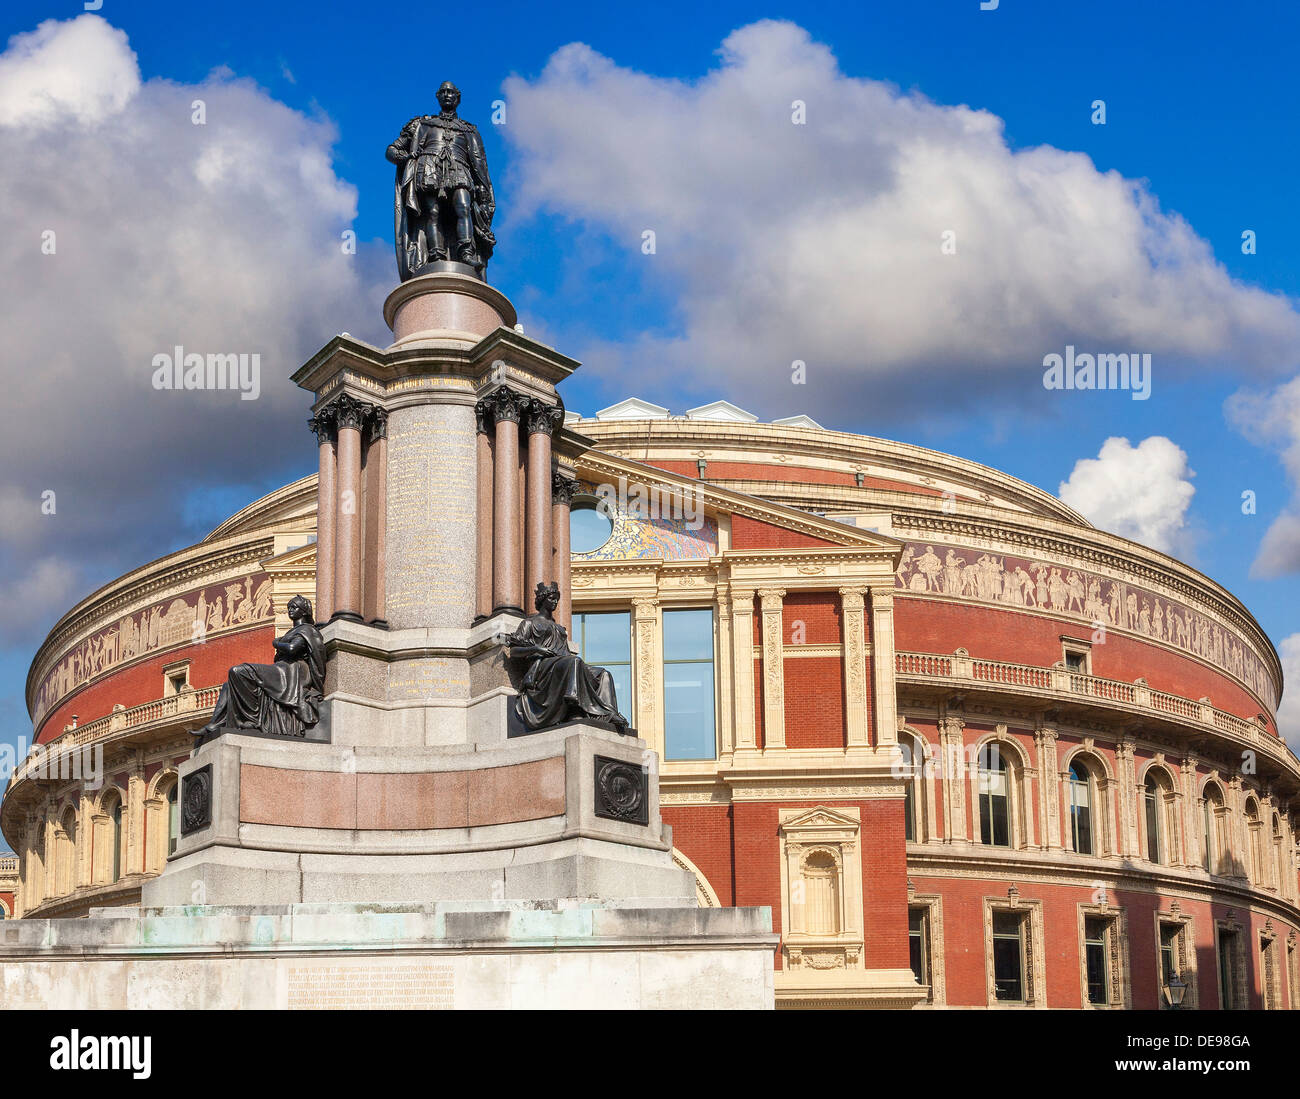 Il Royal Albert Hall di Londra, Regno Unito, vista posteriore dal principe consorte Road, che troneggia la statua del Principe Alberto in primo piano Foto Stock